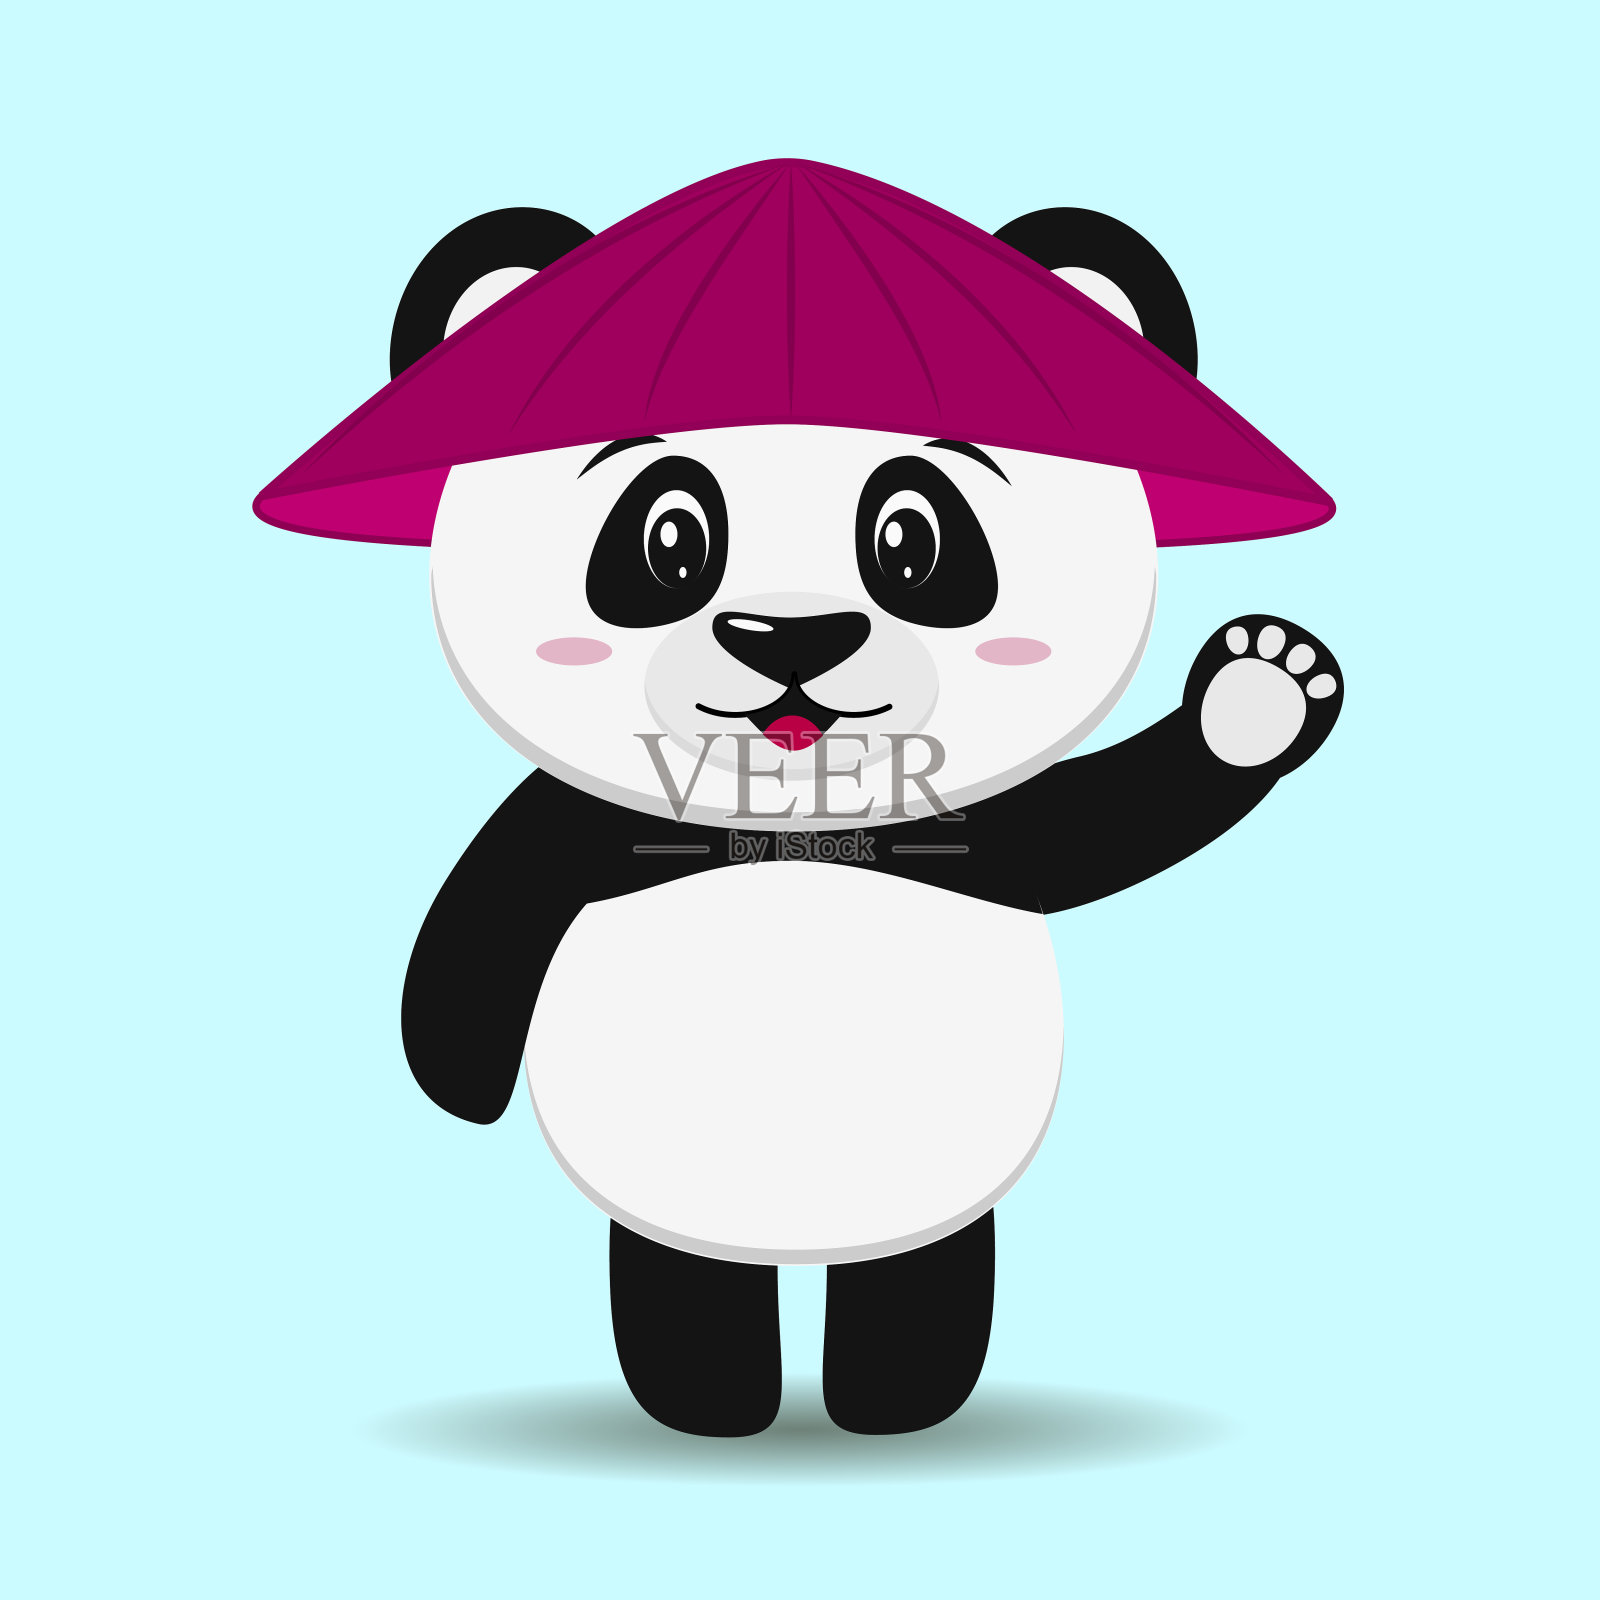 一只戴着卡通帽子的可爱熊猫举起手站在那里。设计元素图片